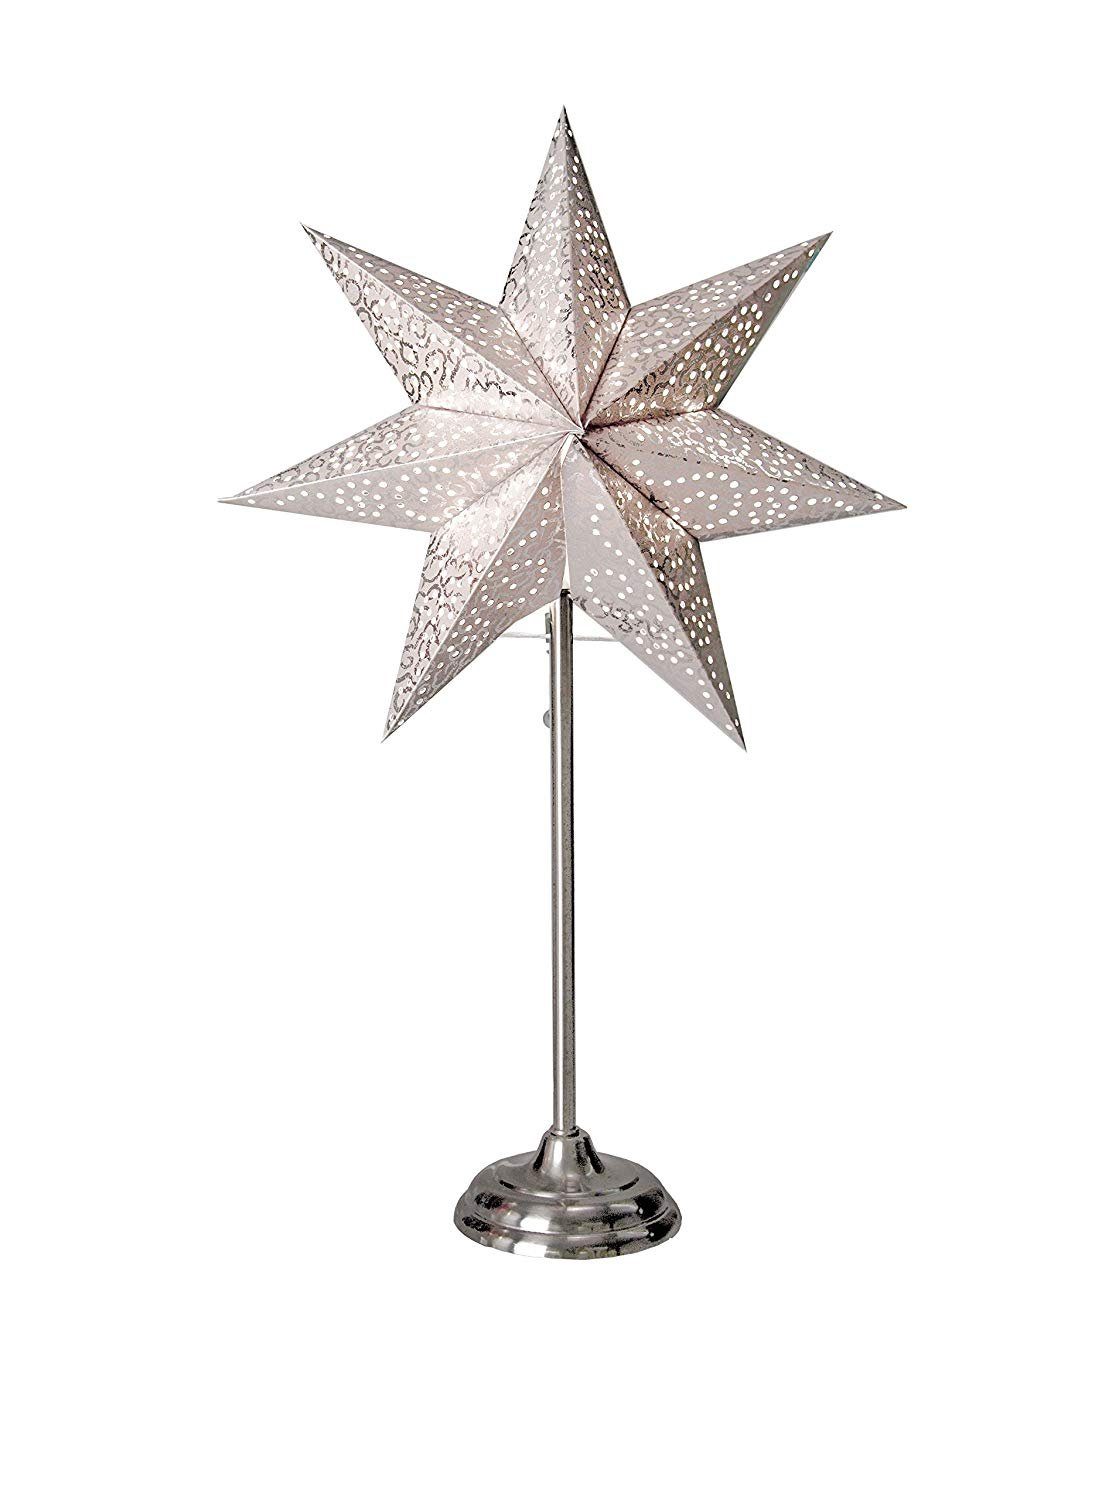 STAR TRADING LED Stern Star Antique Standleuchte, Papier, Weiß, 55 x 34 cm | Beleuchtete Weihnachtssterne